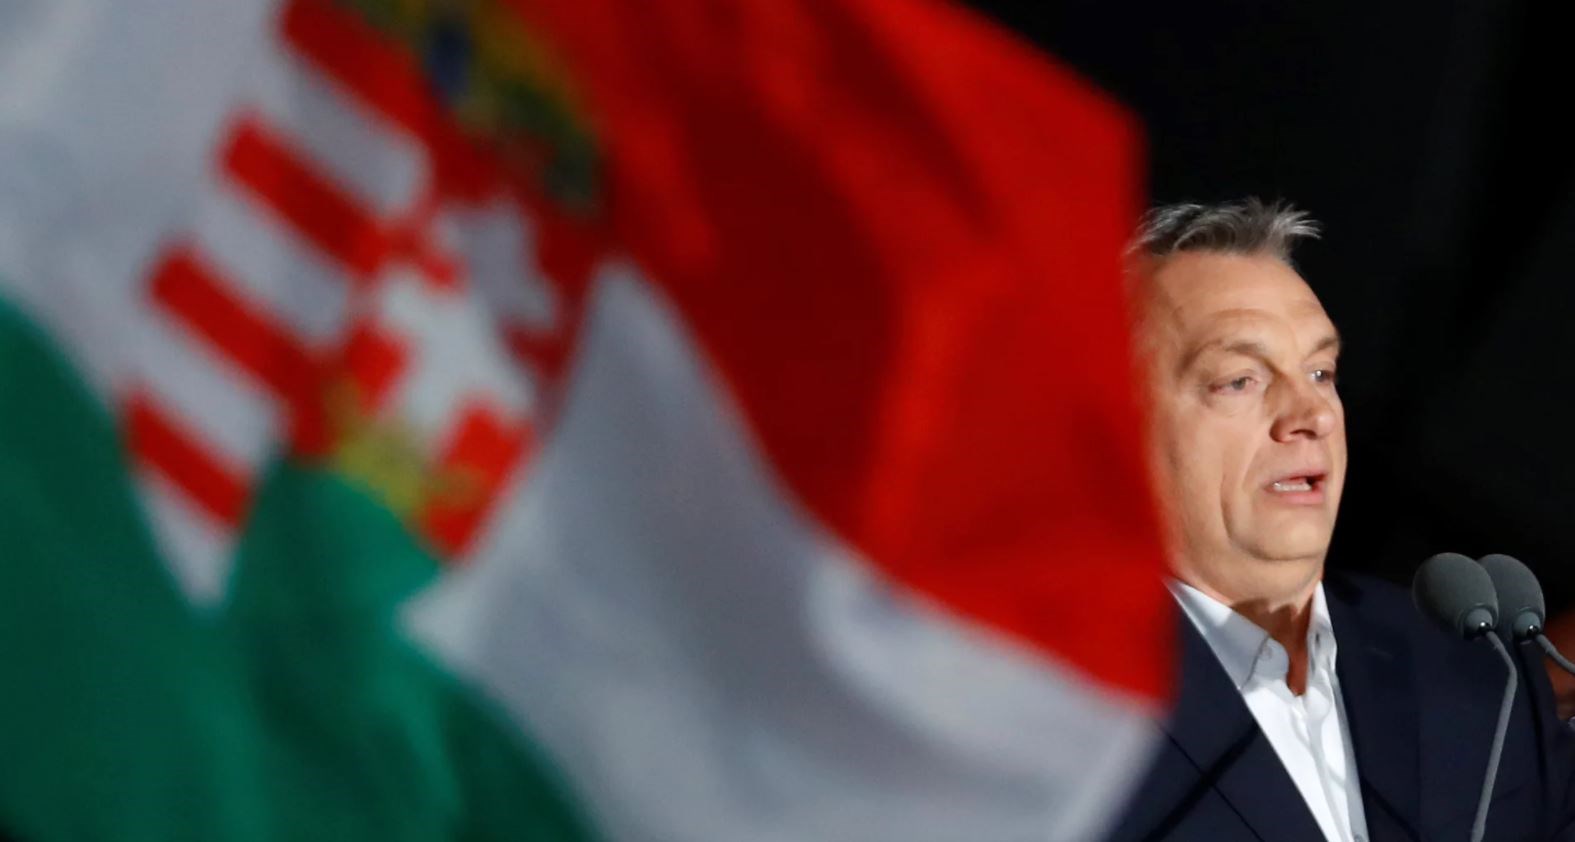 Οι πρώτες δηλώσεις του Όρμπαν μετά τη νίκη του στις ουγγρικές εκλογές – ΦΩΤΟ